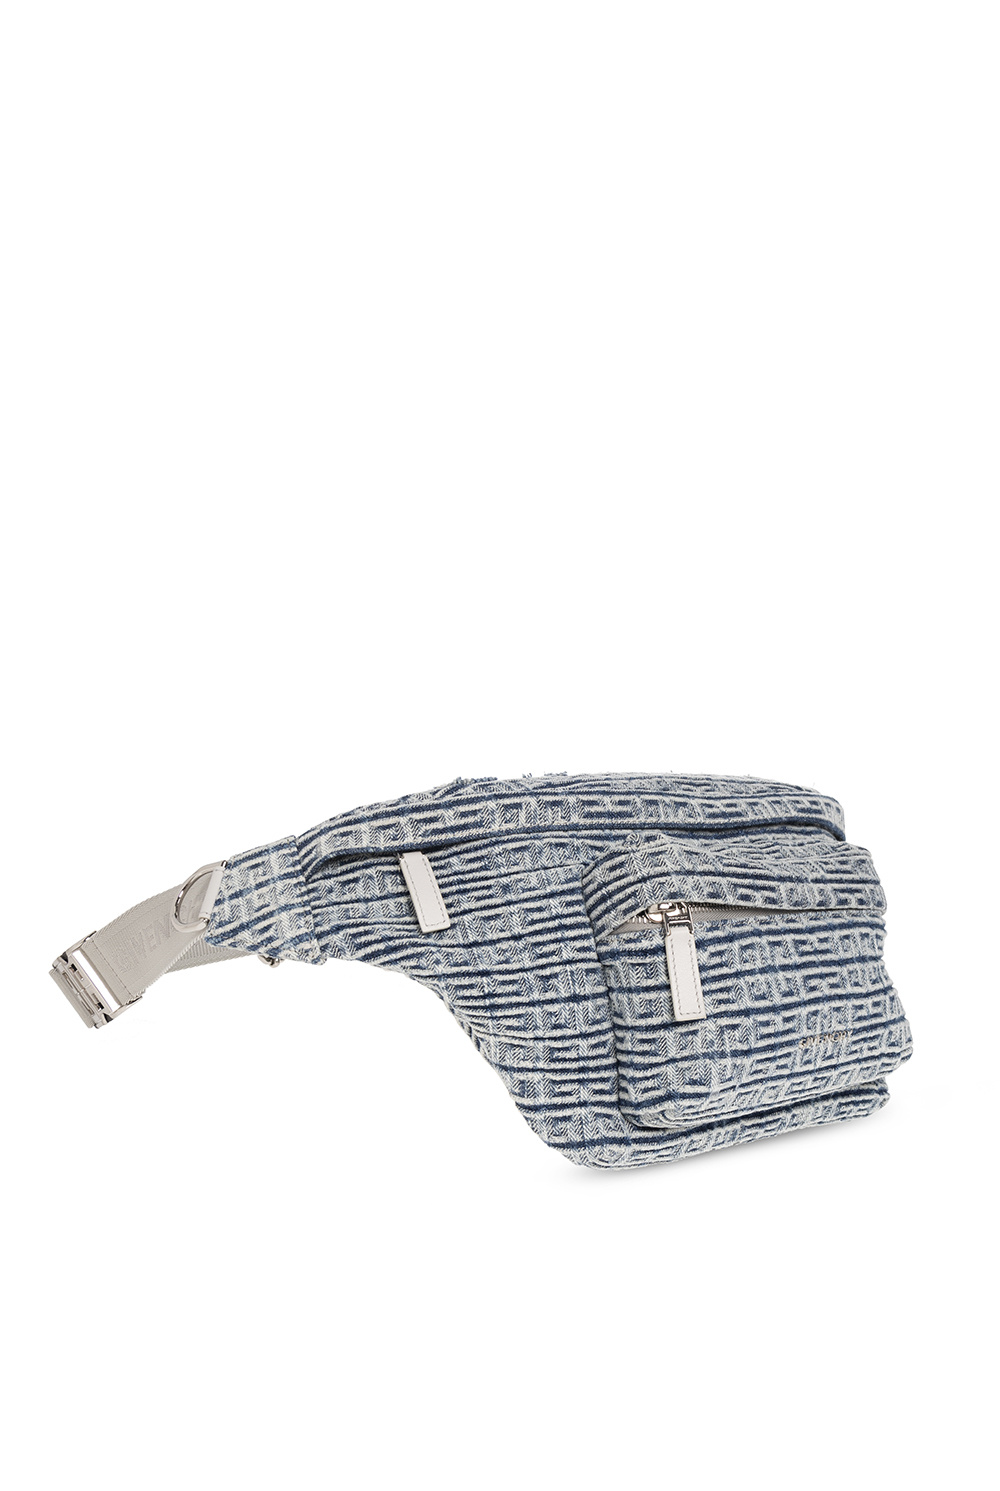 givenchy Black ‘Essential’ belt bag